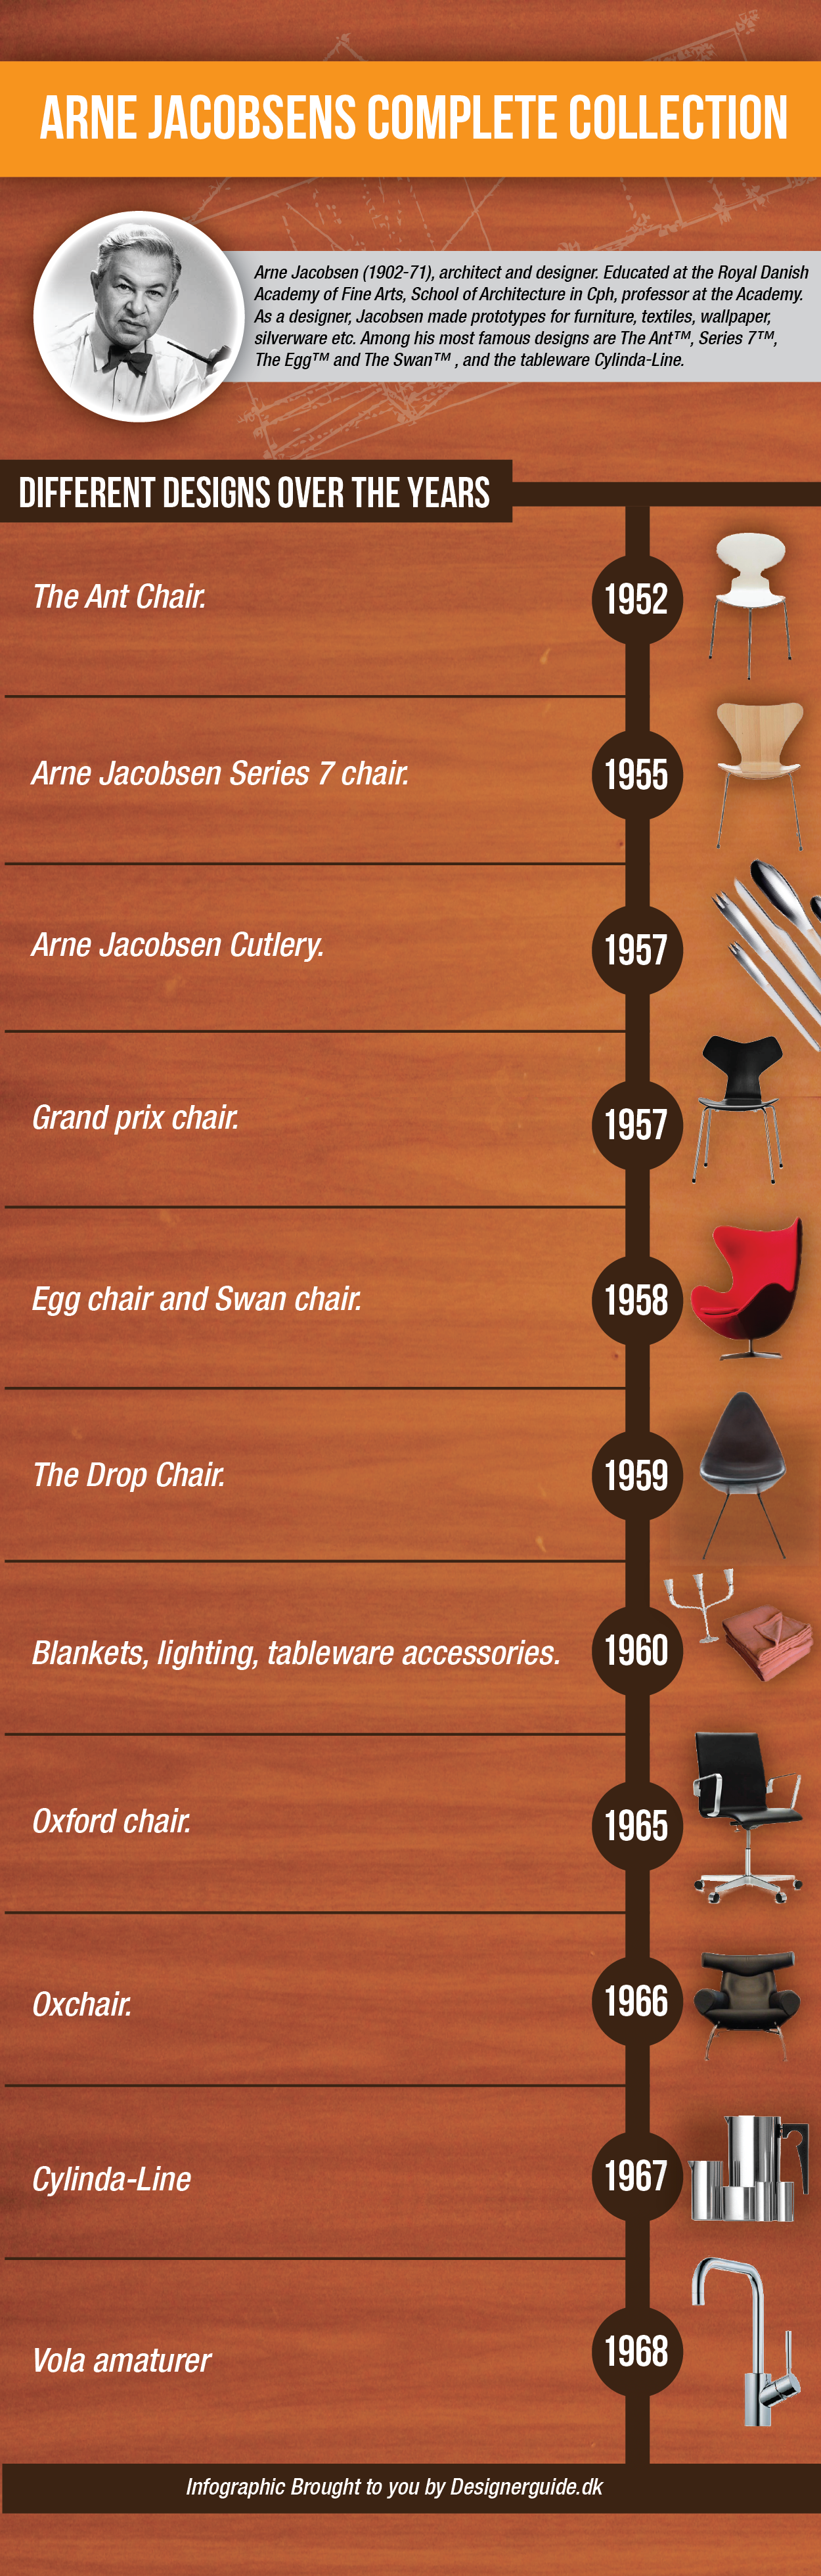 Arne Jacobsens complete furniture designs timeline